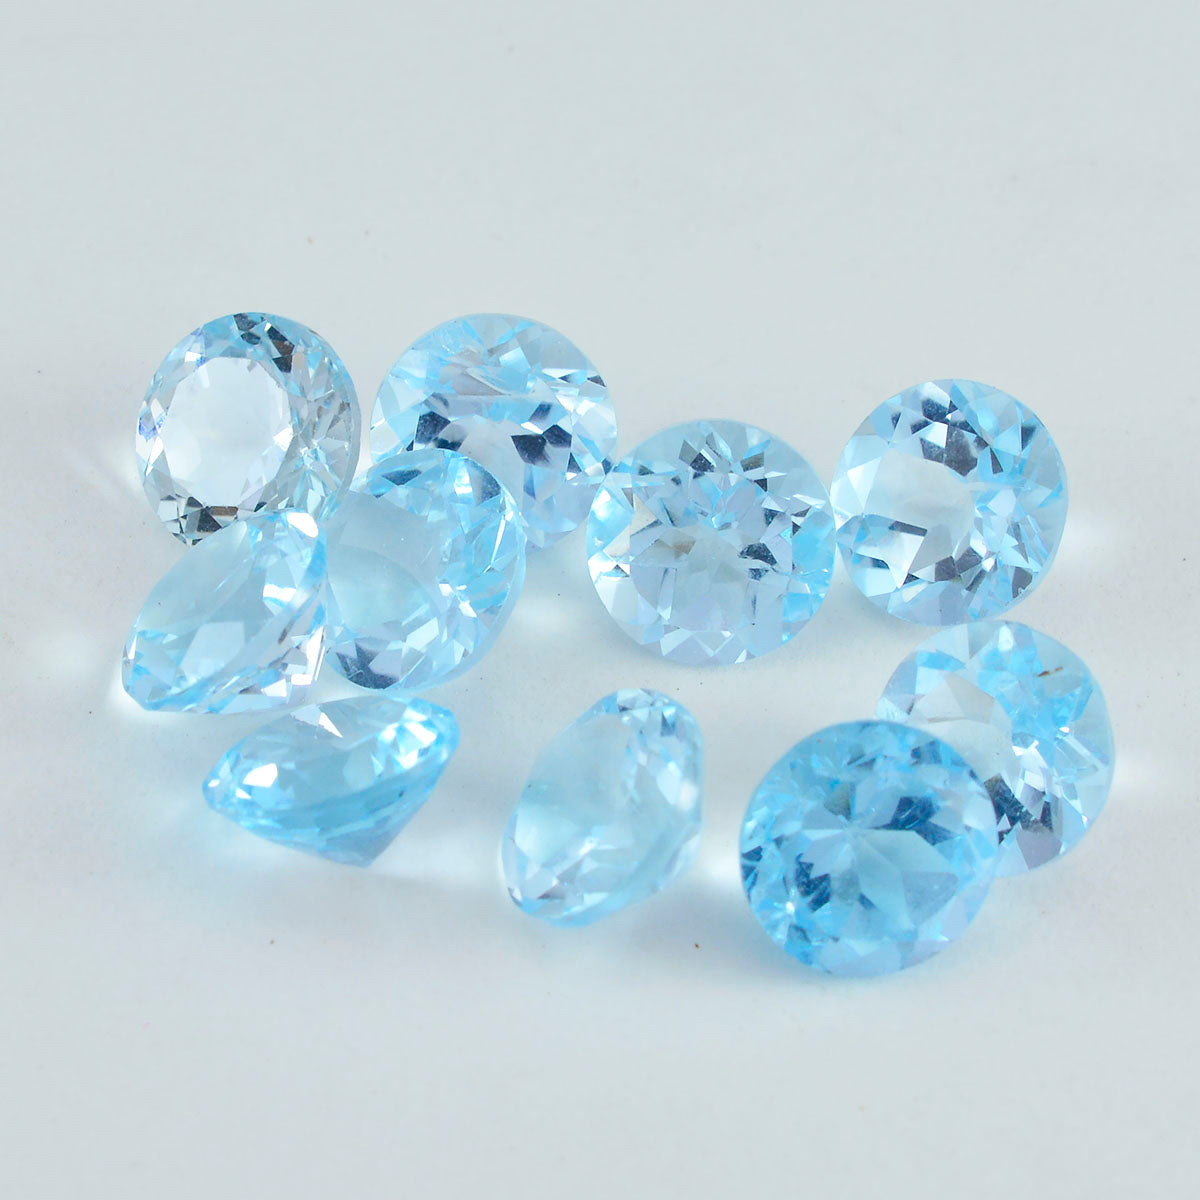 Riyogems 1 pièce de topaze bleue véritable à facettes 5x5mm forme ronde superbe qualité pierre en vrac